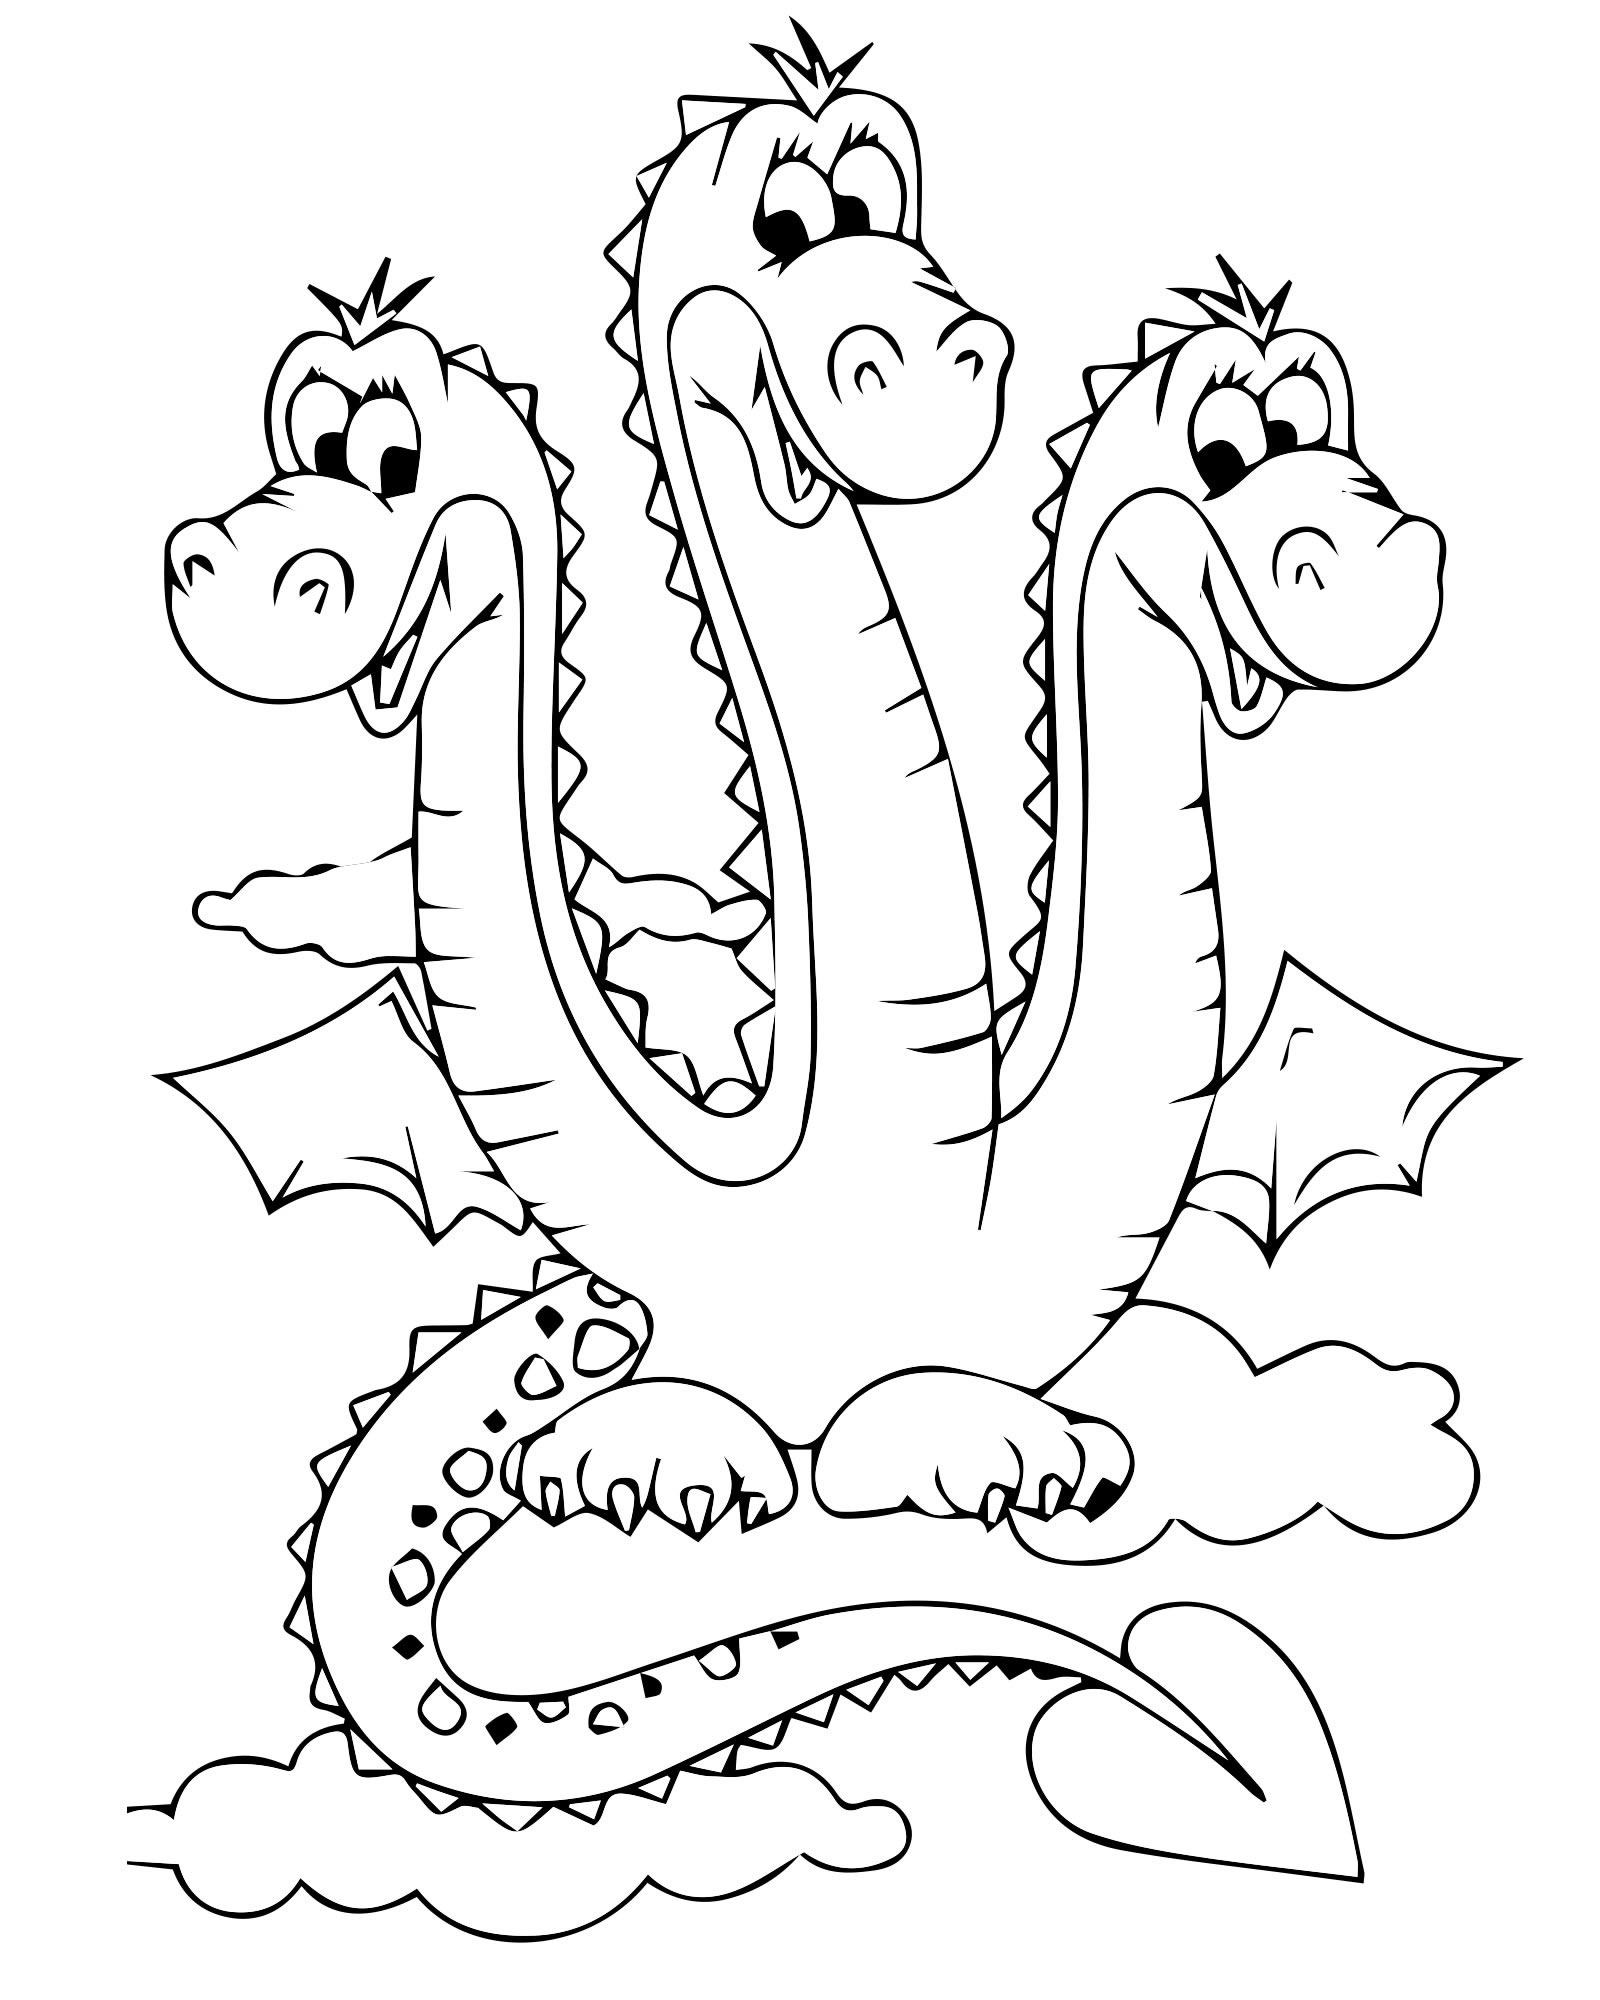 Three-headed dragon #7